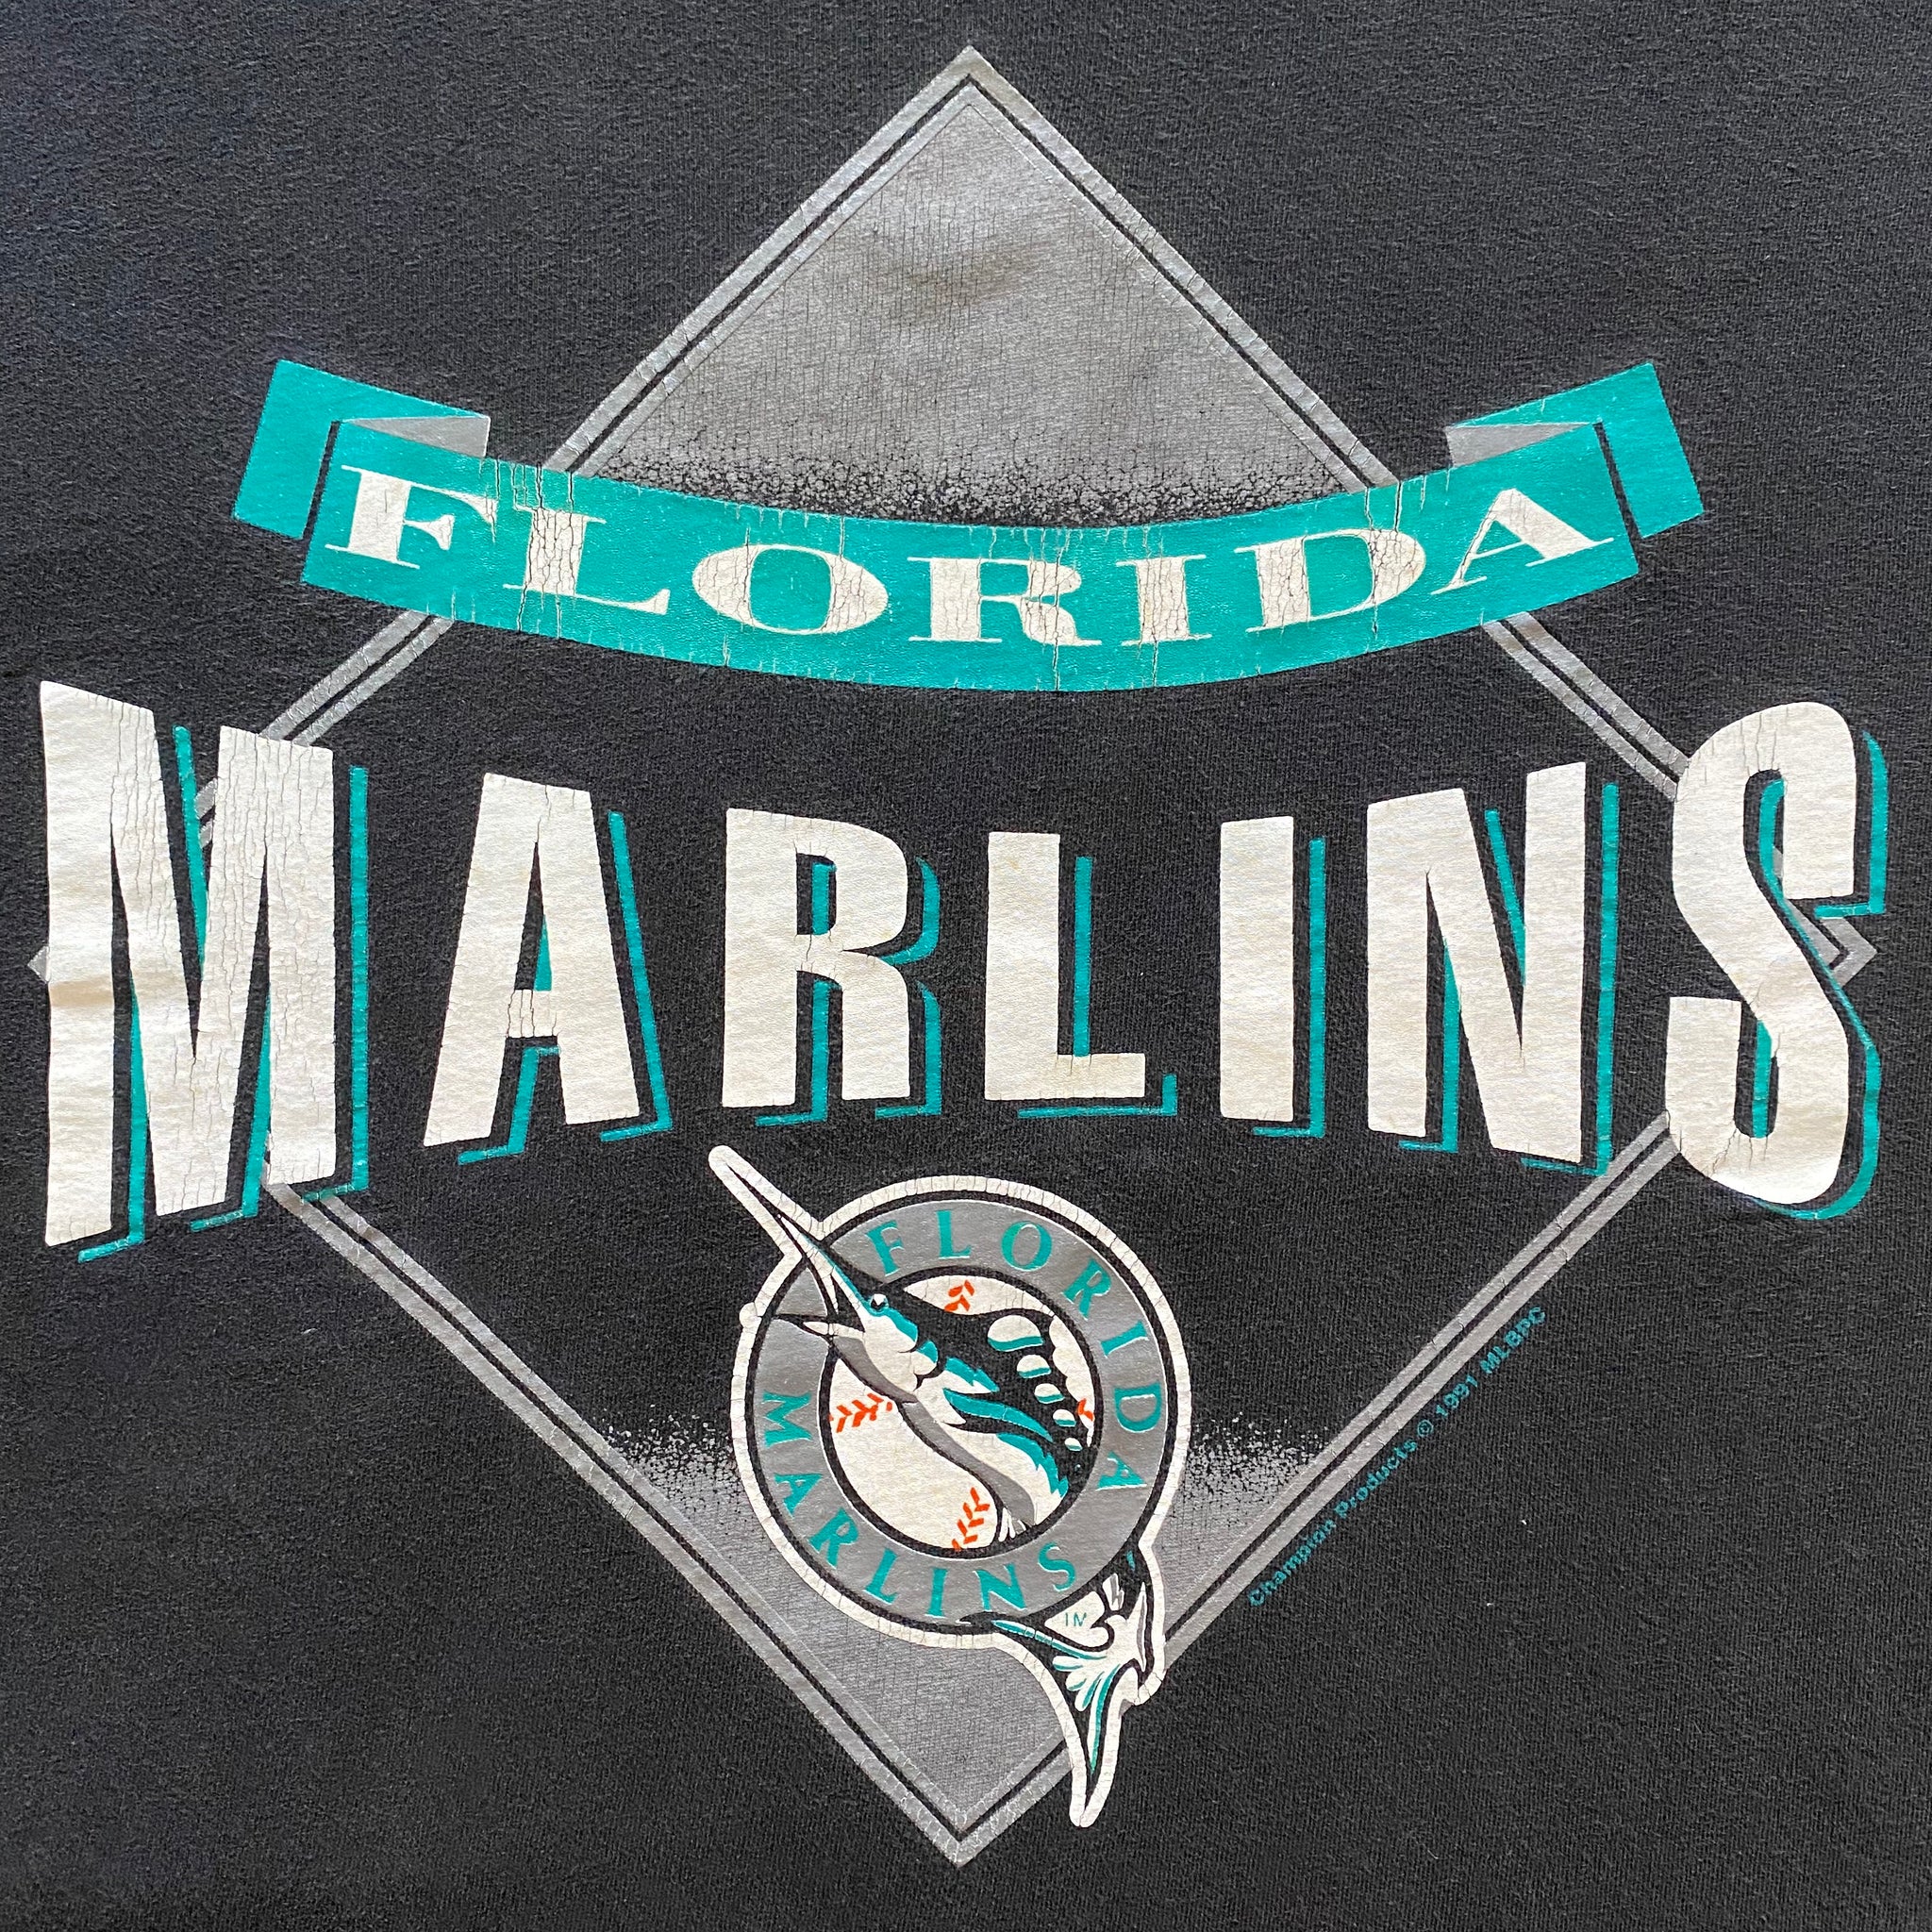 90s Florida Marlins Inaugural 1993 Baseball Pocket t-shirt Small - The  Captains Vintage